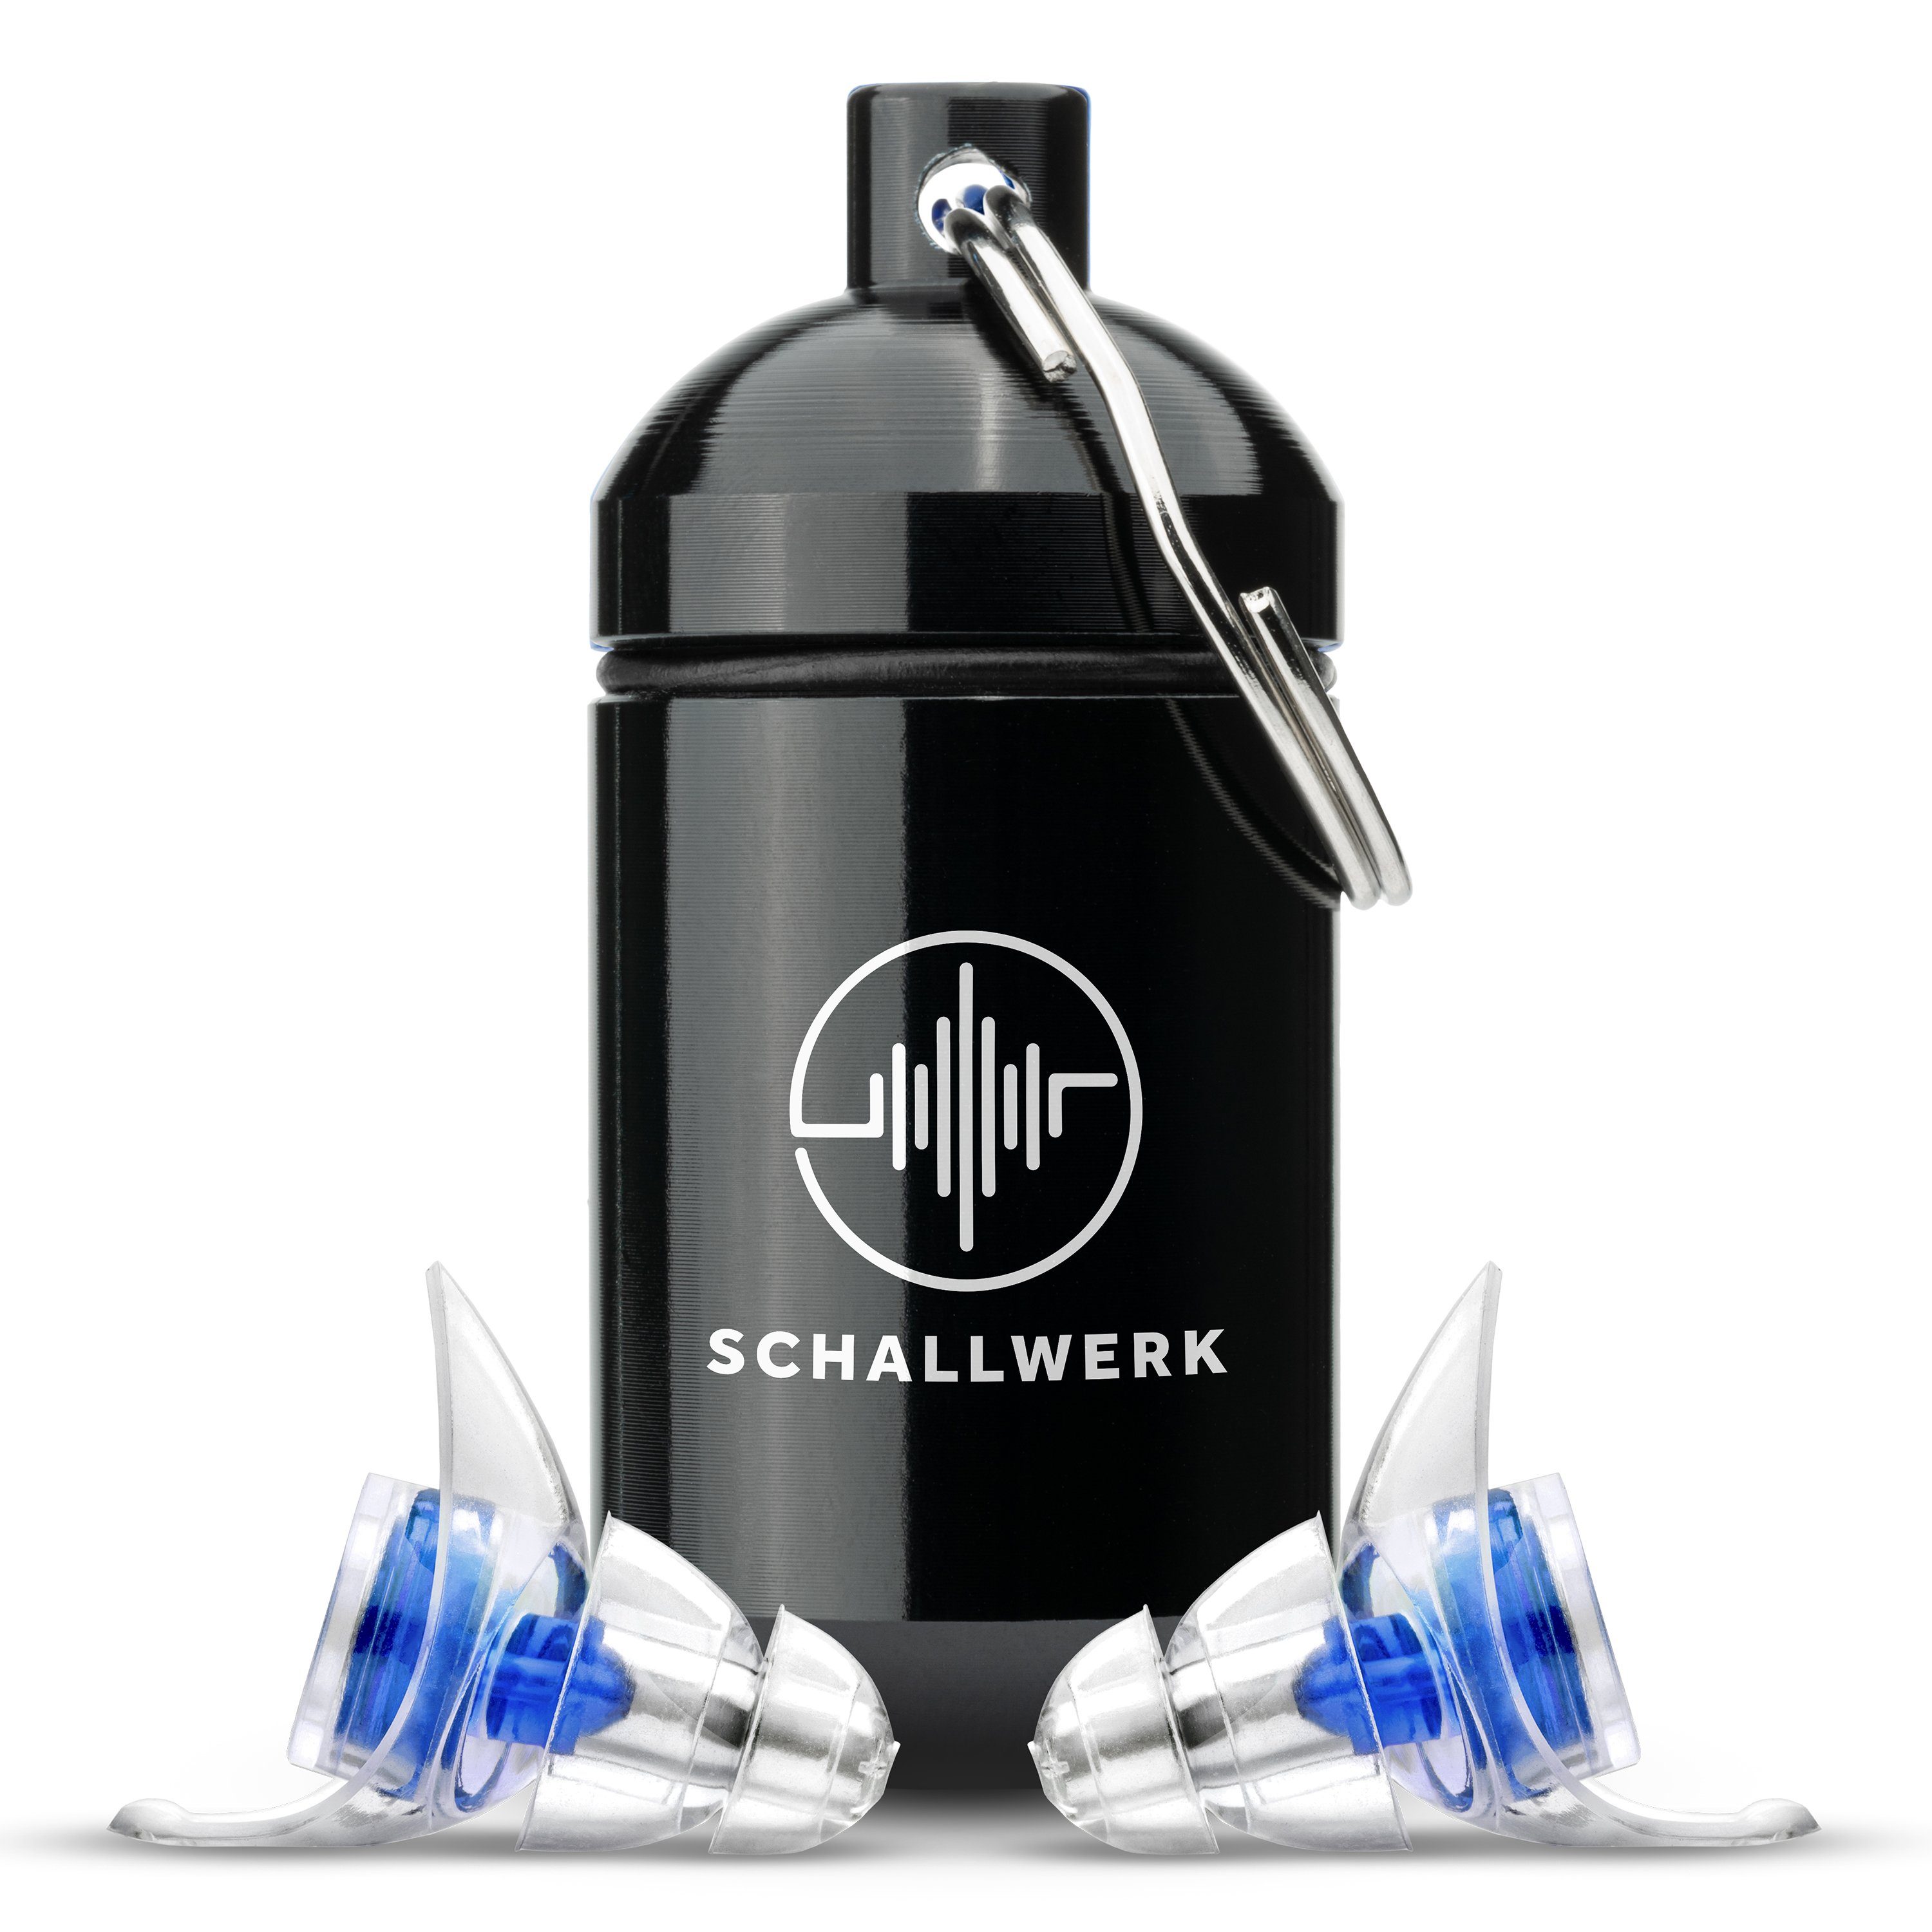 starkem Gehörschutz Ohrstöpsel Filter Schallwerk SCHALLWERK mit Strong+ Gehörschutzstöpsel ® extra Schutz Blaue